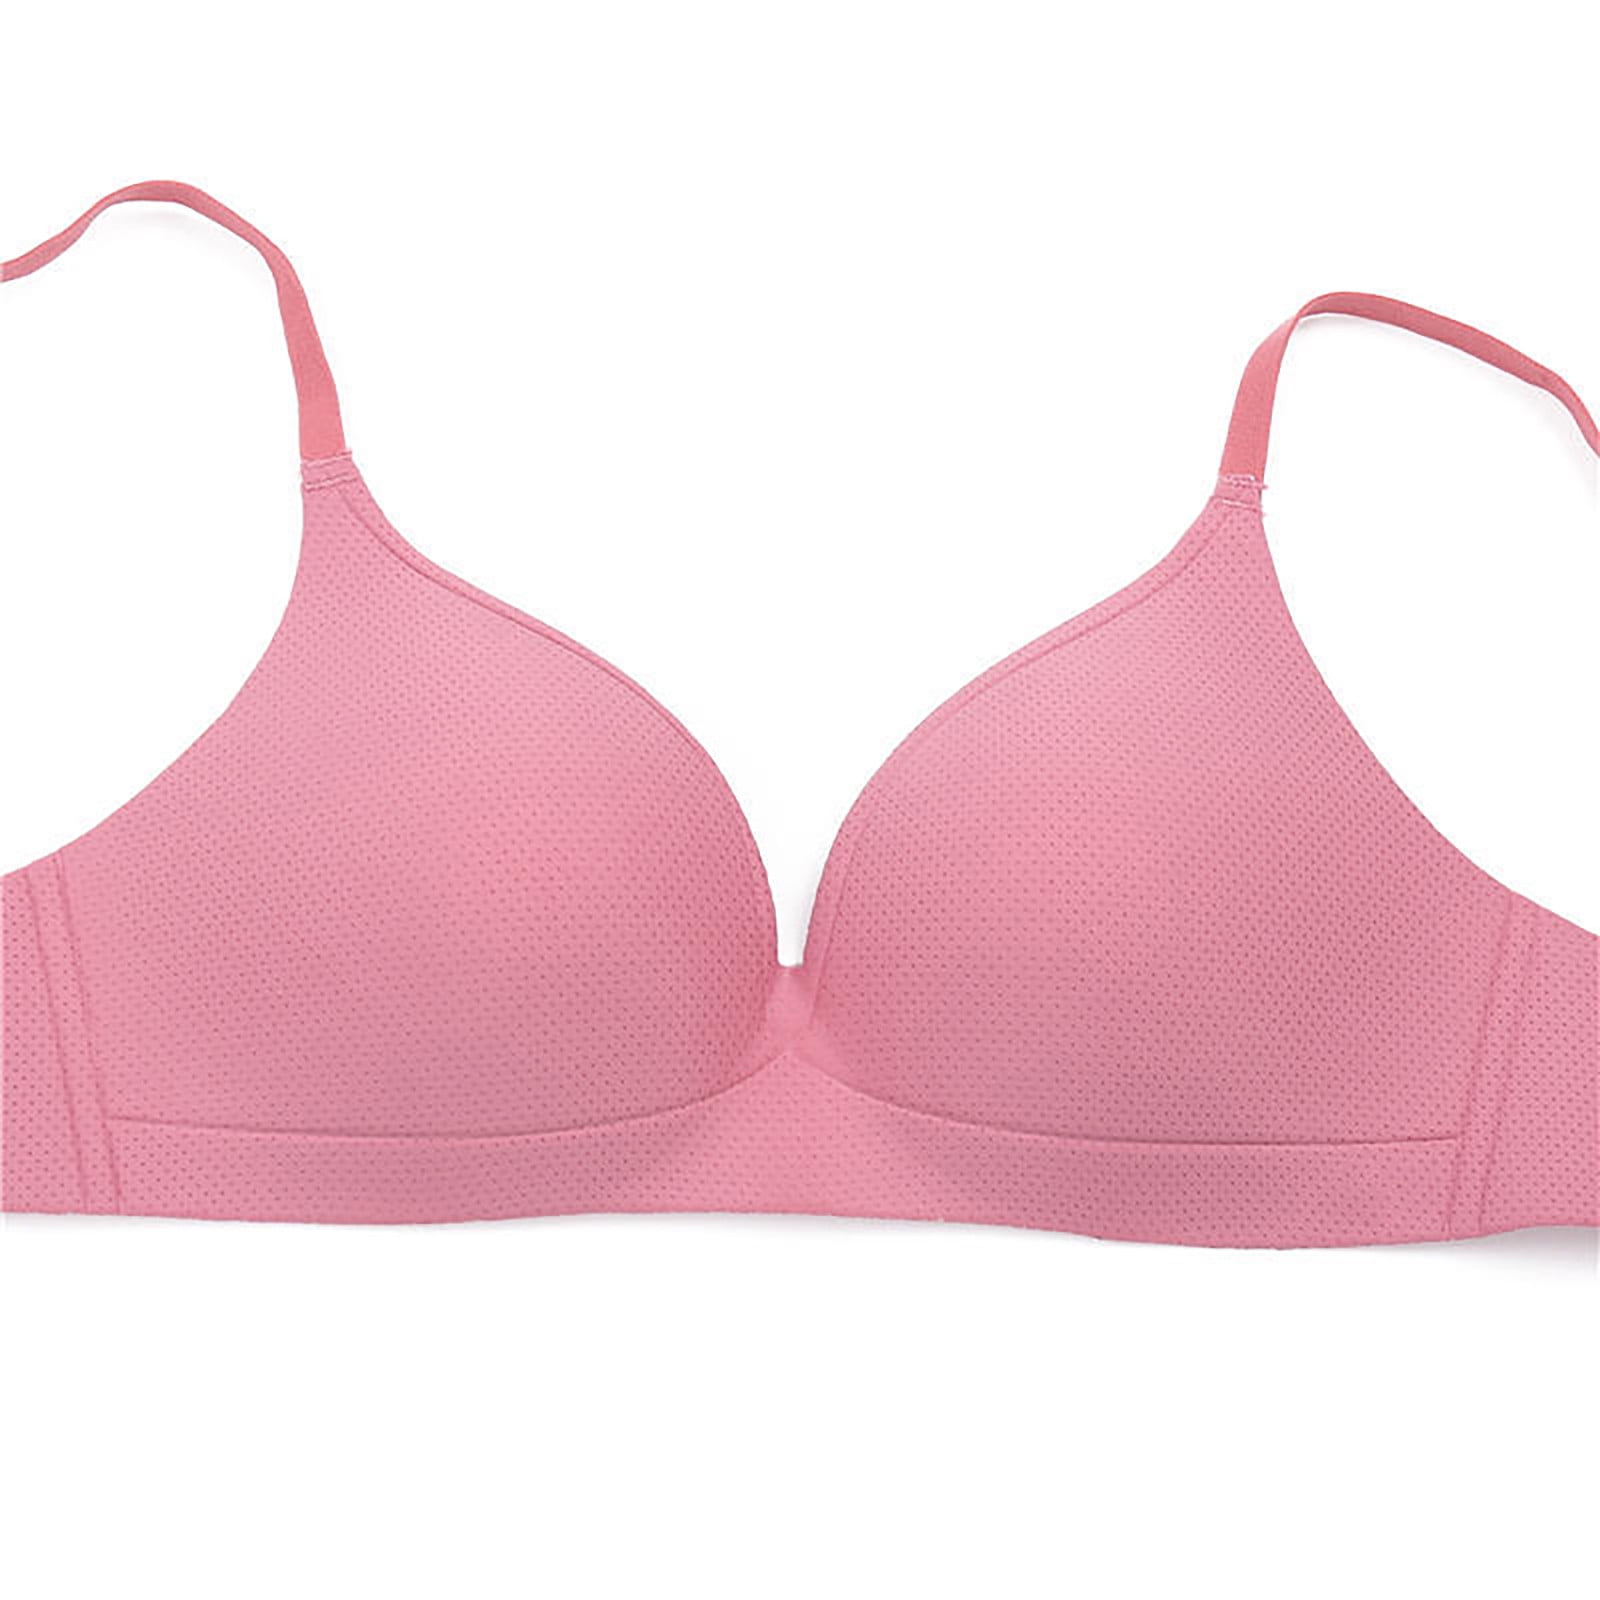 Zkozptok Women's Sports Bra Wireless Yoga Wire Free Underwear Push Up Bra  Everyday Bras,Pink,L 